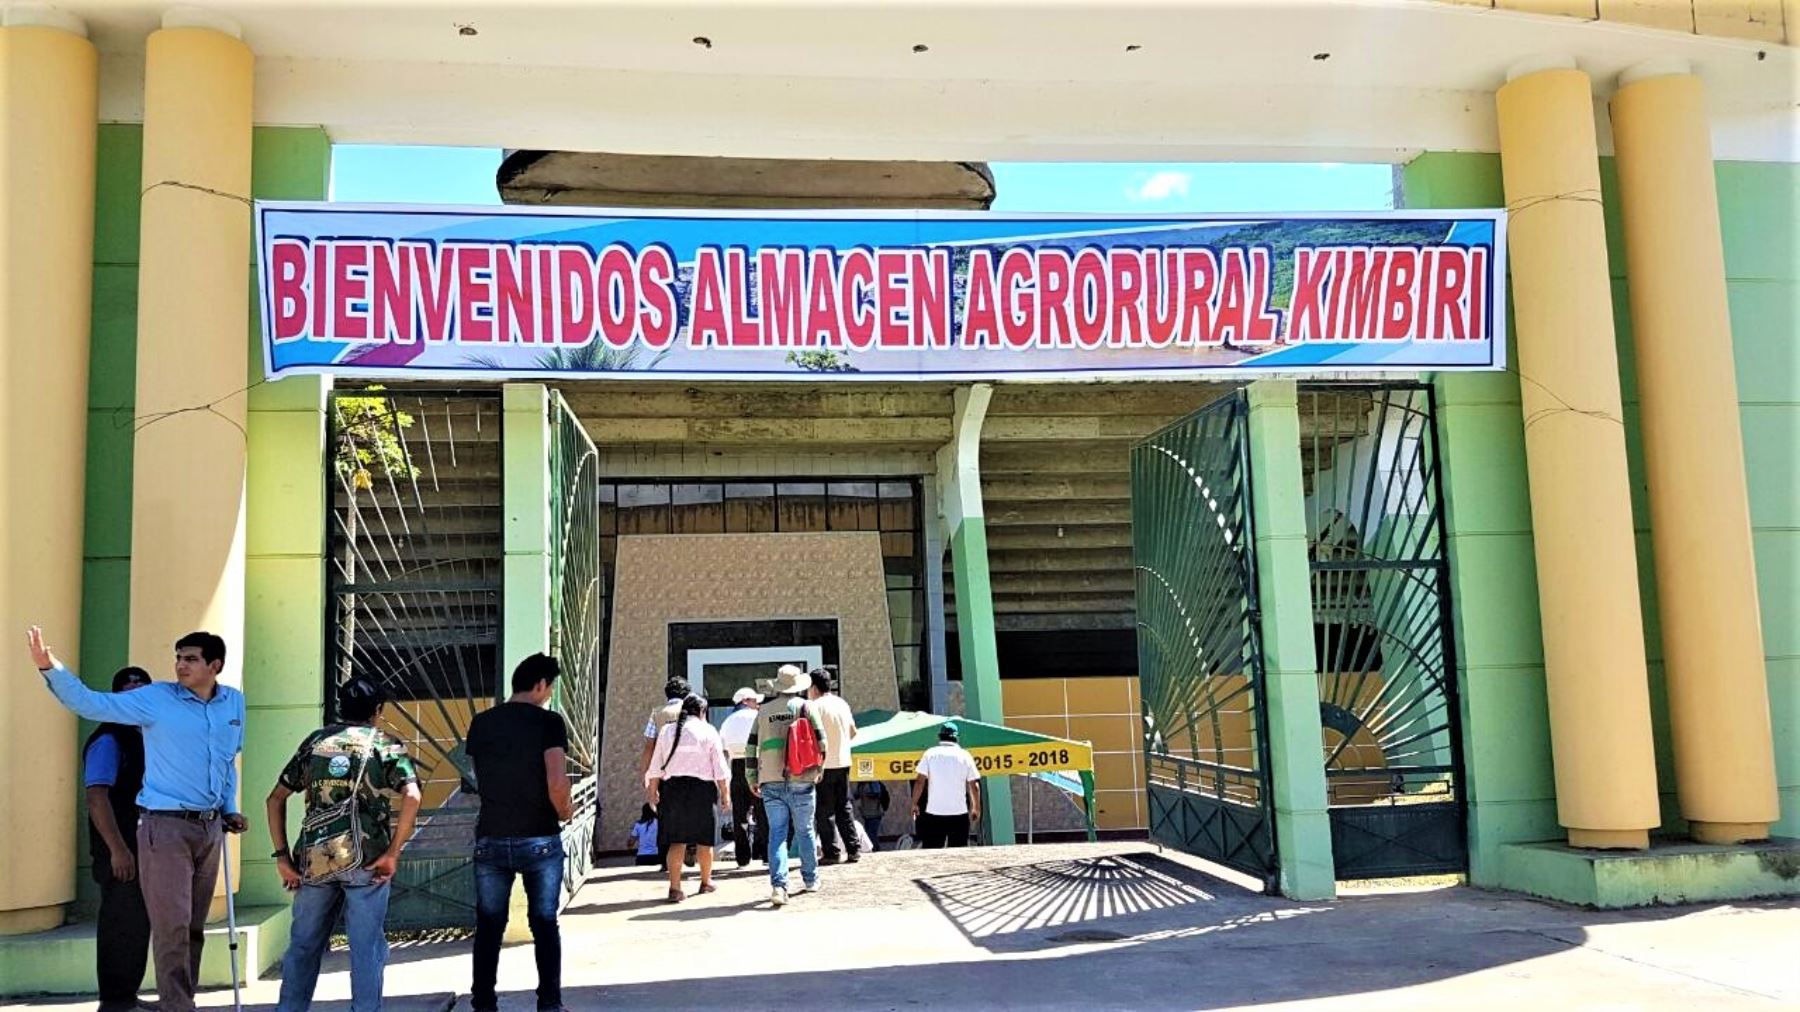 Además, el jefe zonal de la Dirección Regional de Agricultura de Cusco (DRAC) para el Vraem, otorgó un local para oficina de Agro Rural en Pichari, donde se podrá atender a los agricultores de la zona.